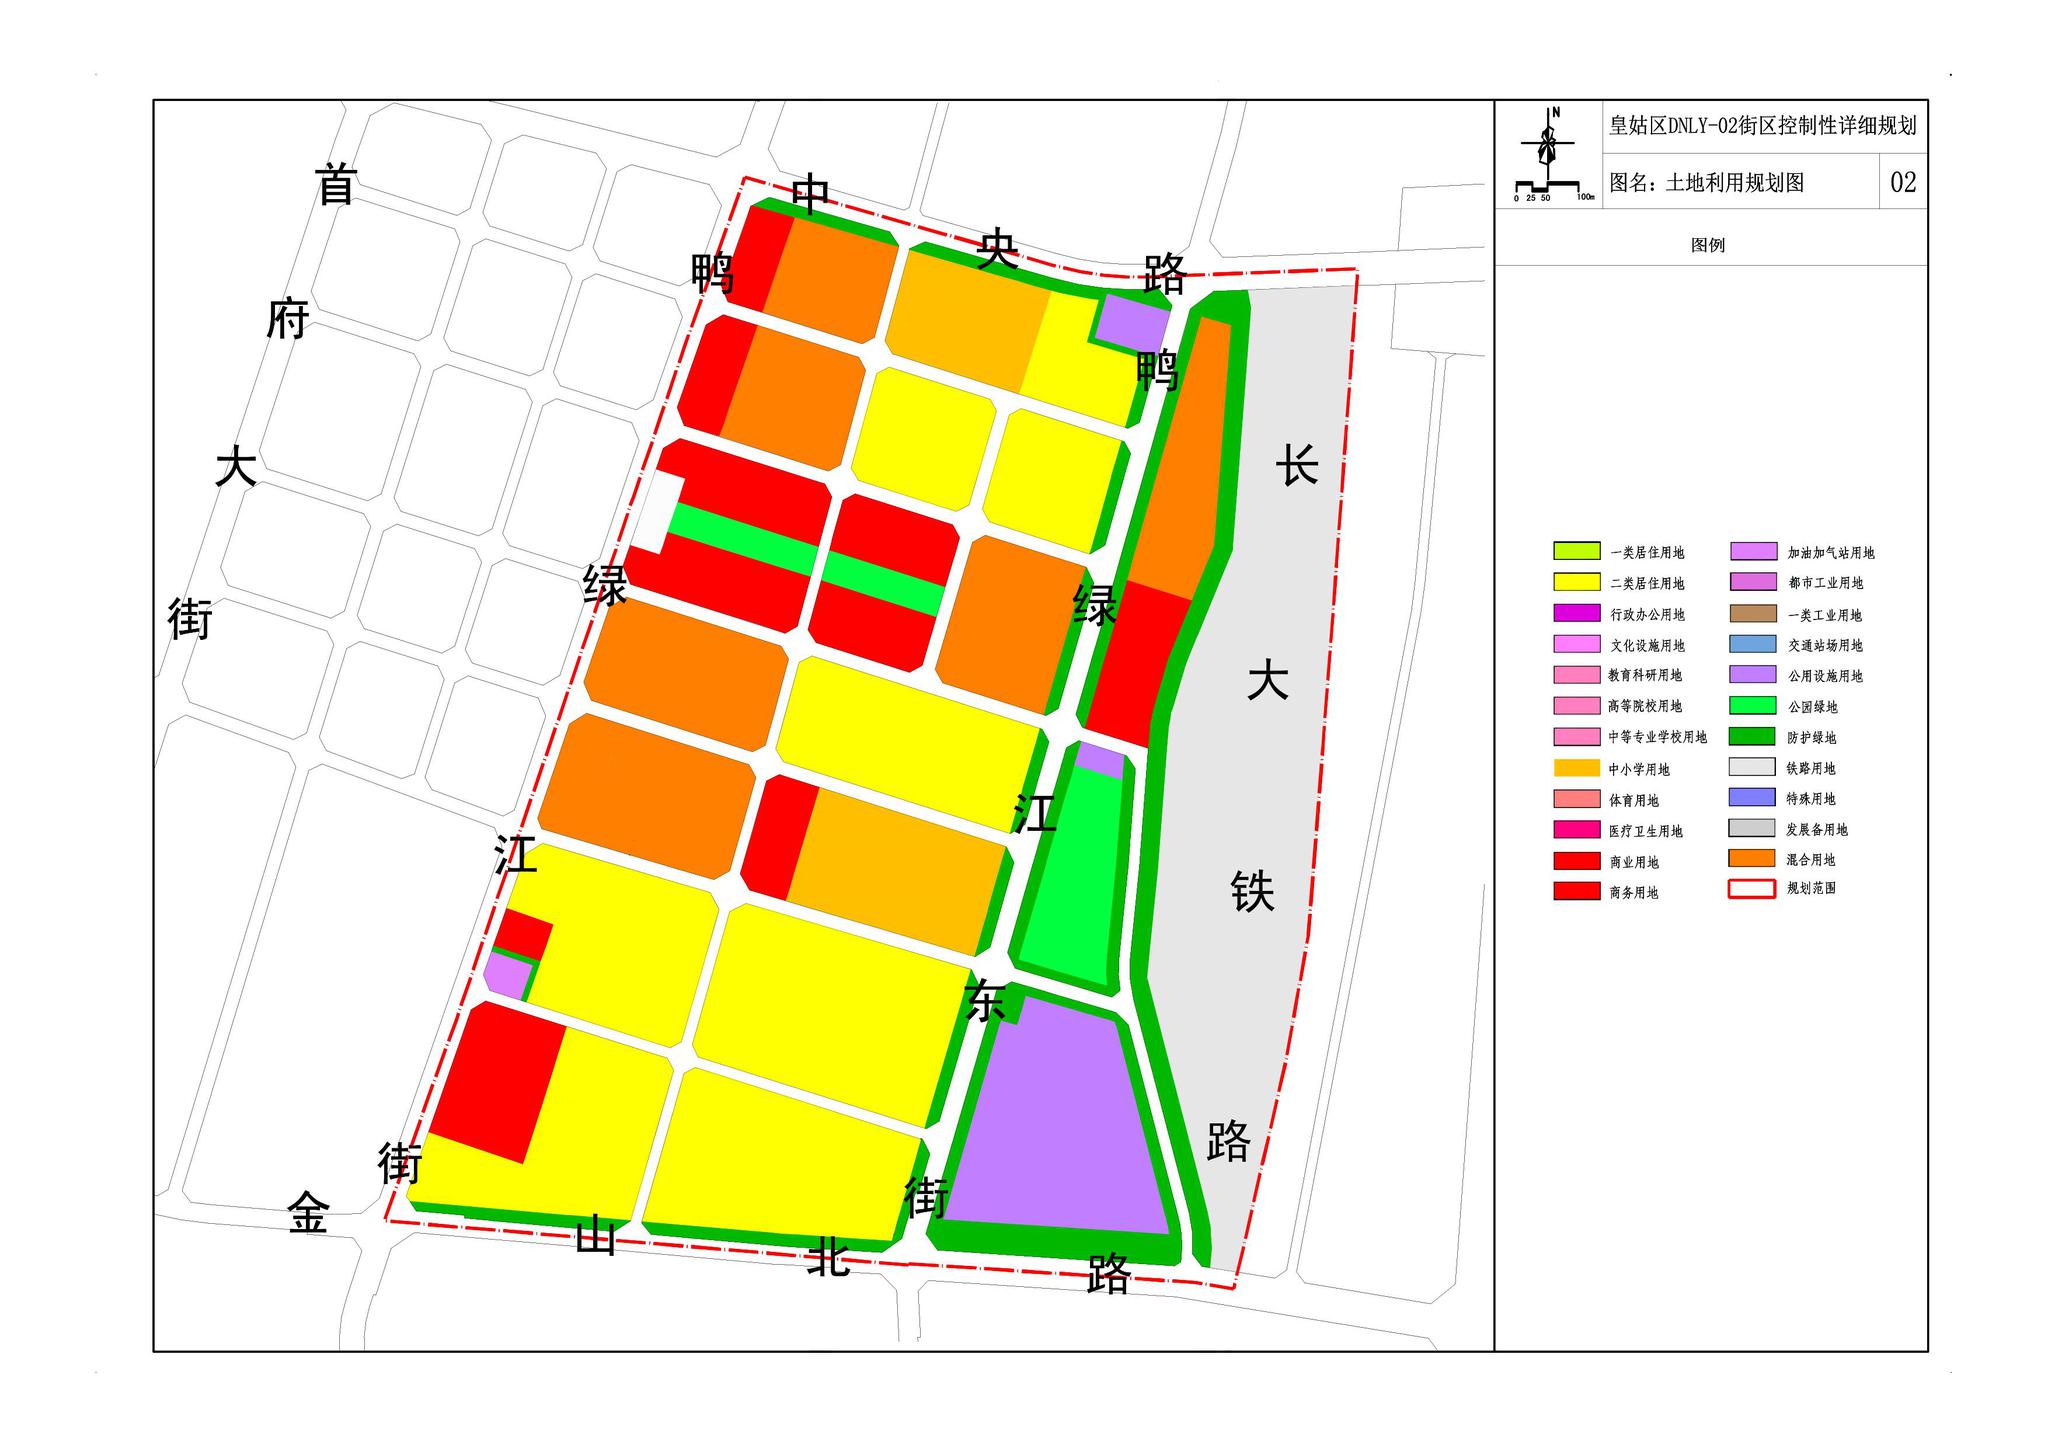 首府新区dnly02街区用地拟调整定位沈阳北部商业中心